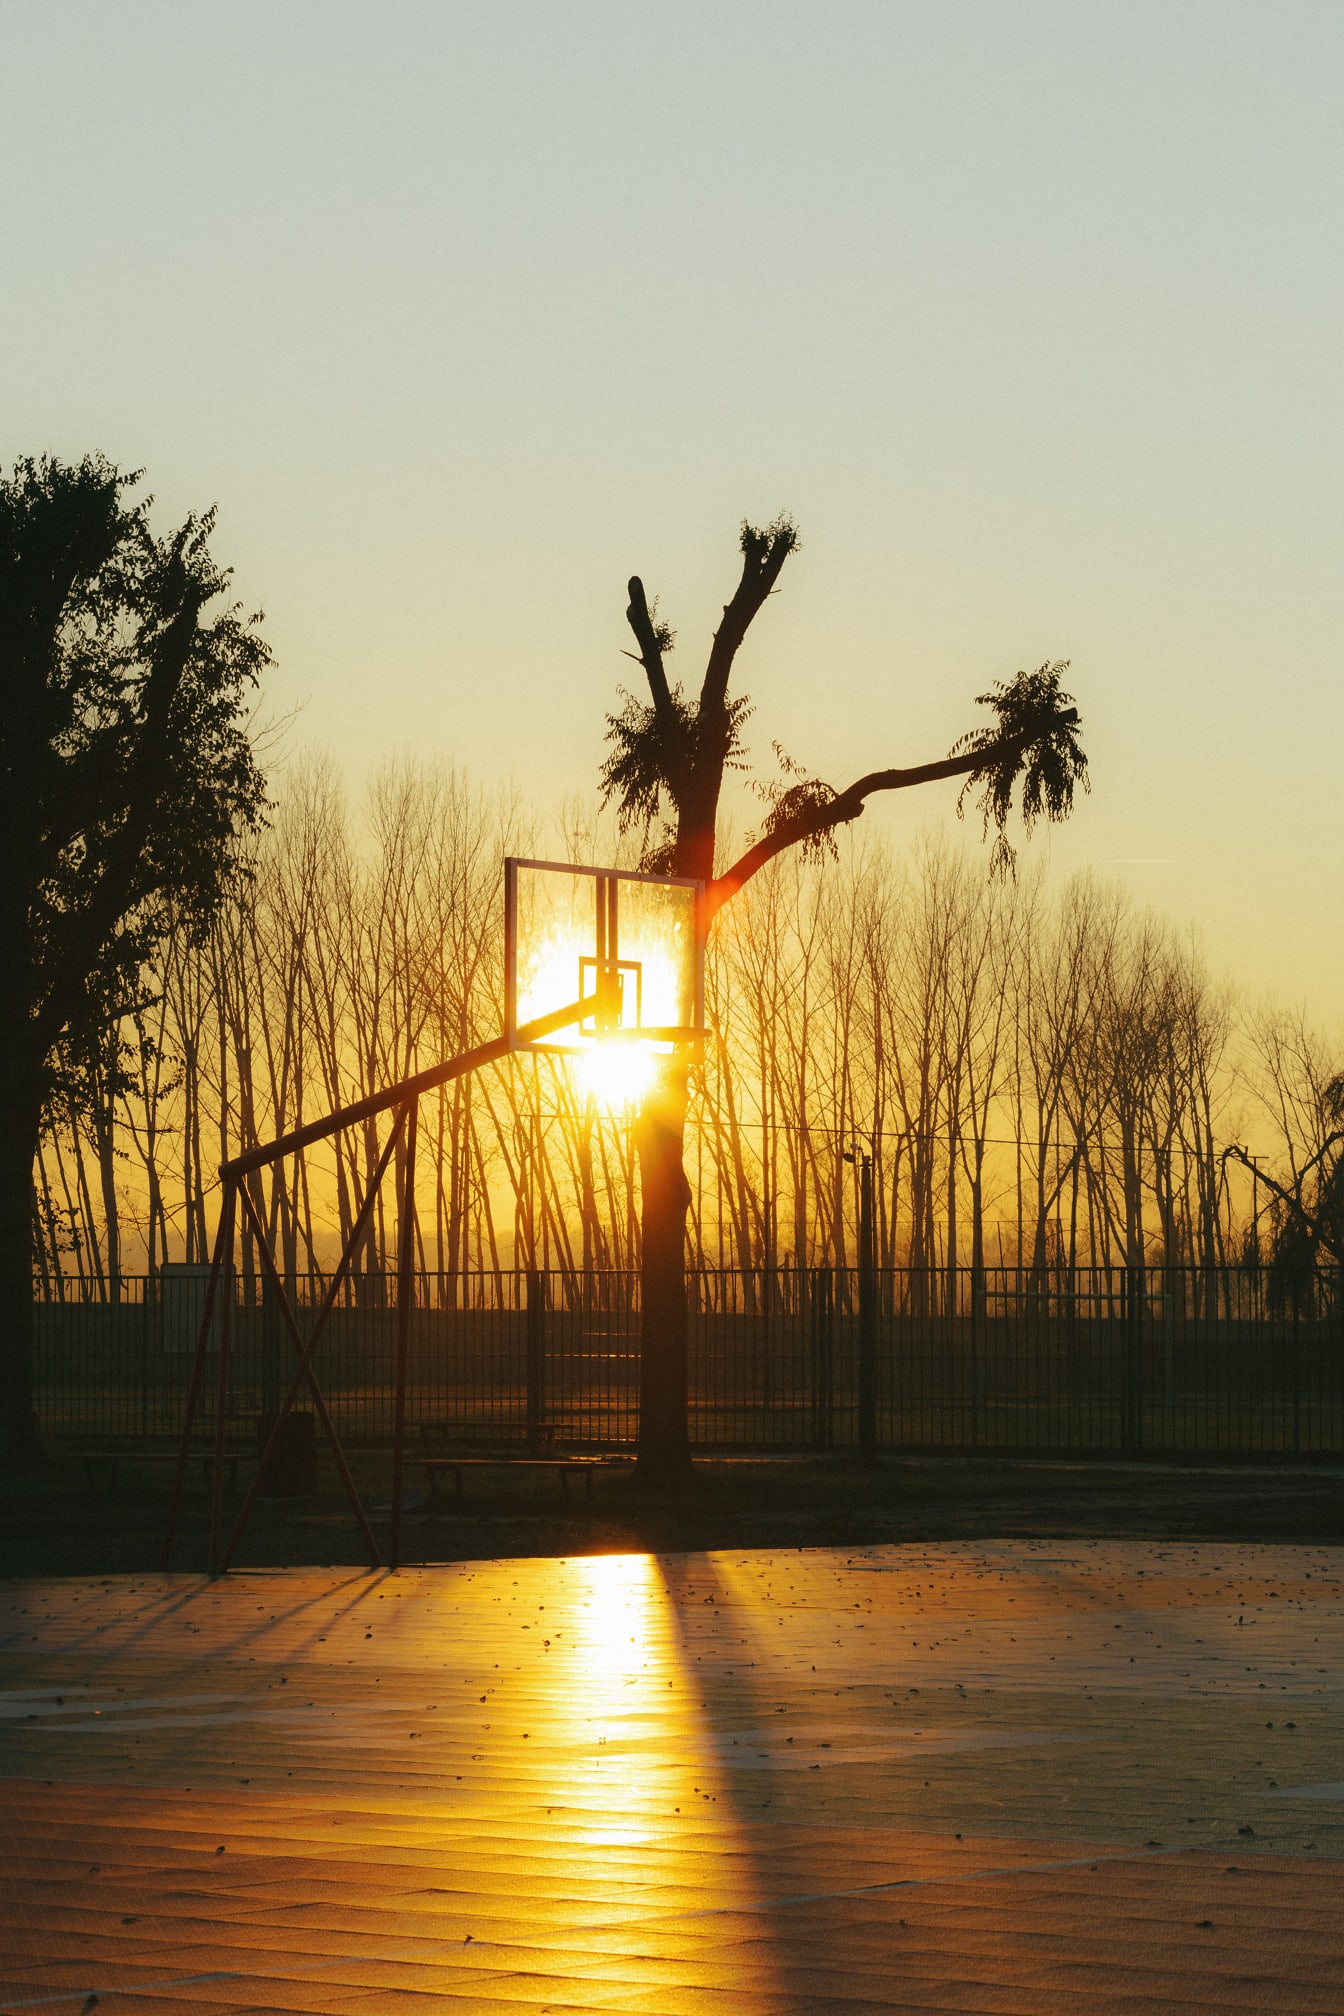 Terrain de basket-ball à l’heure dorée au lever du soleil avec des rayons de soleil sur le panier de basket-ball